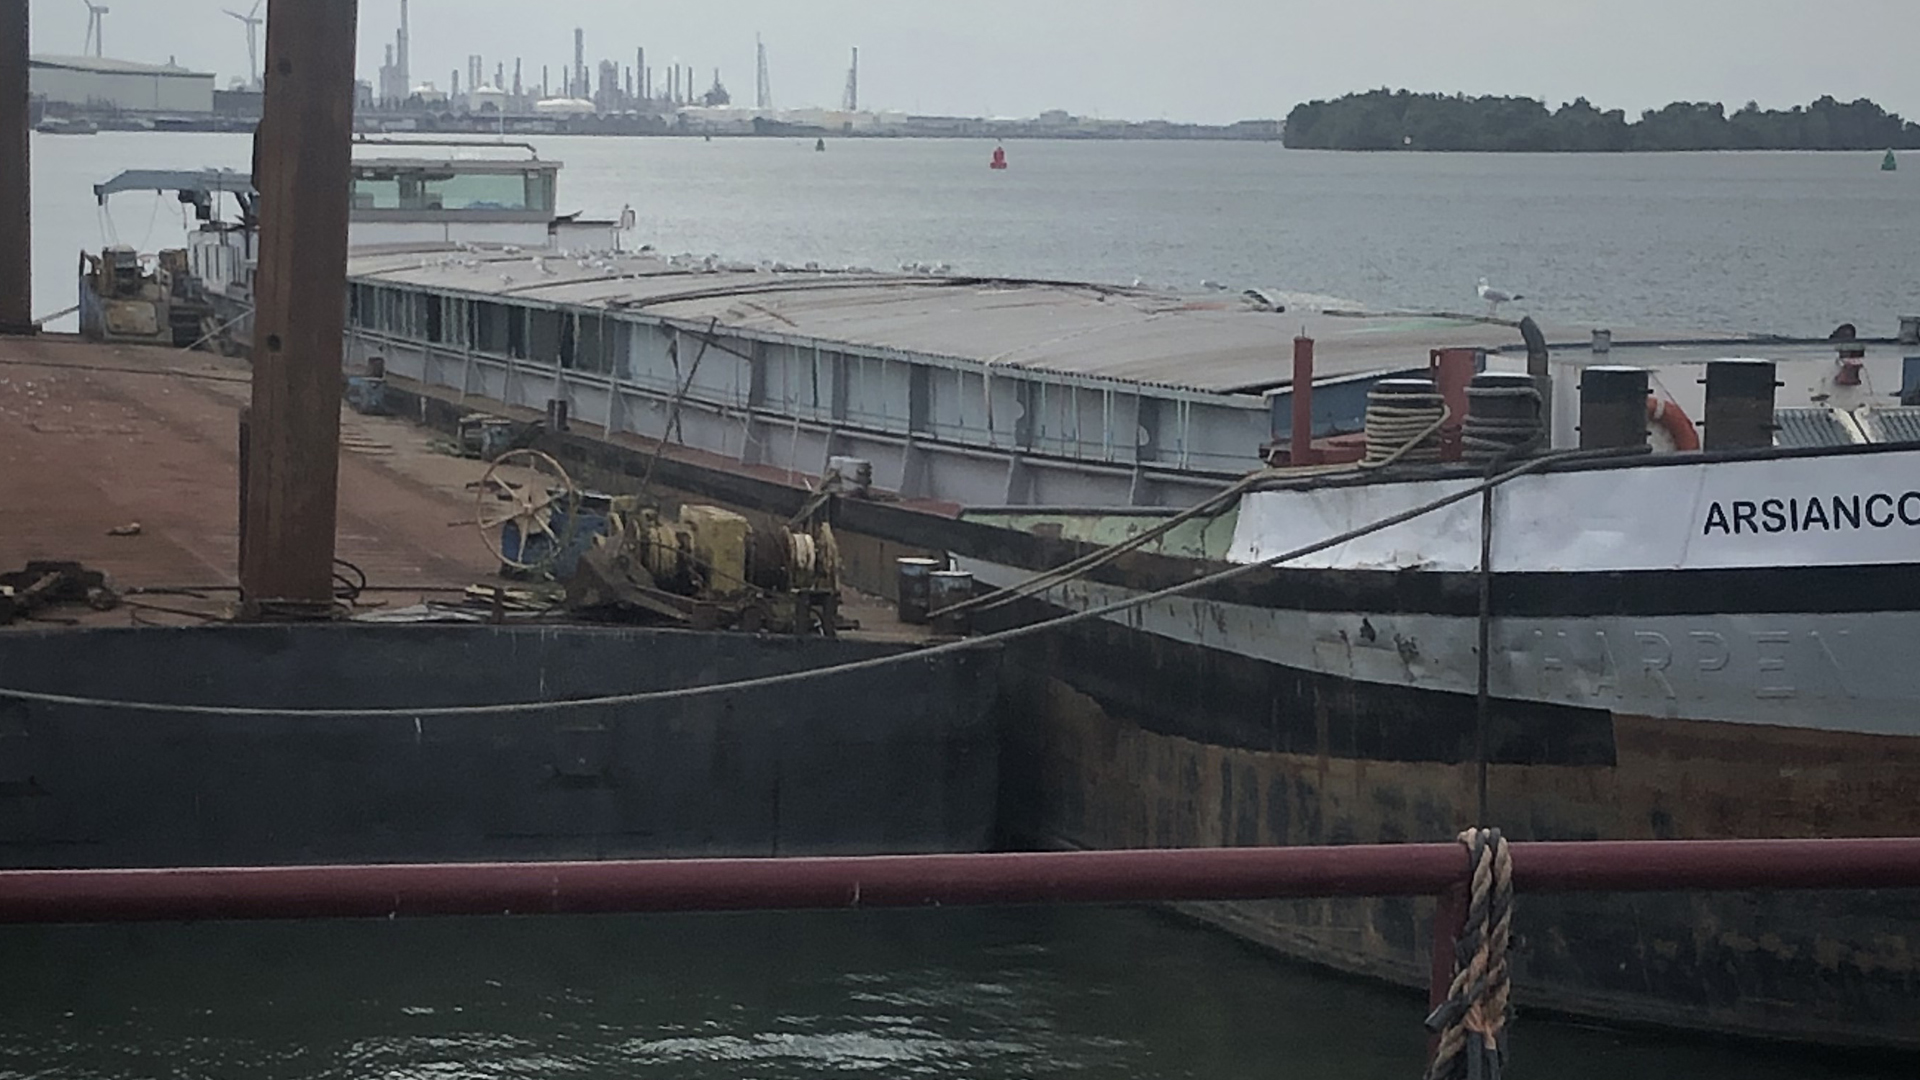 Das Schiff MS Arsianco liegt im Hafen von Moerdijk | NDR